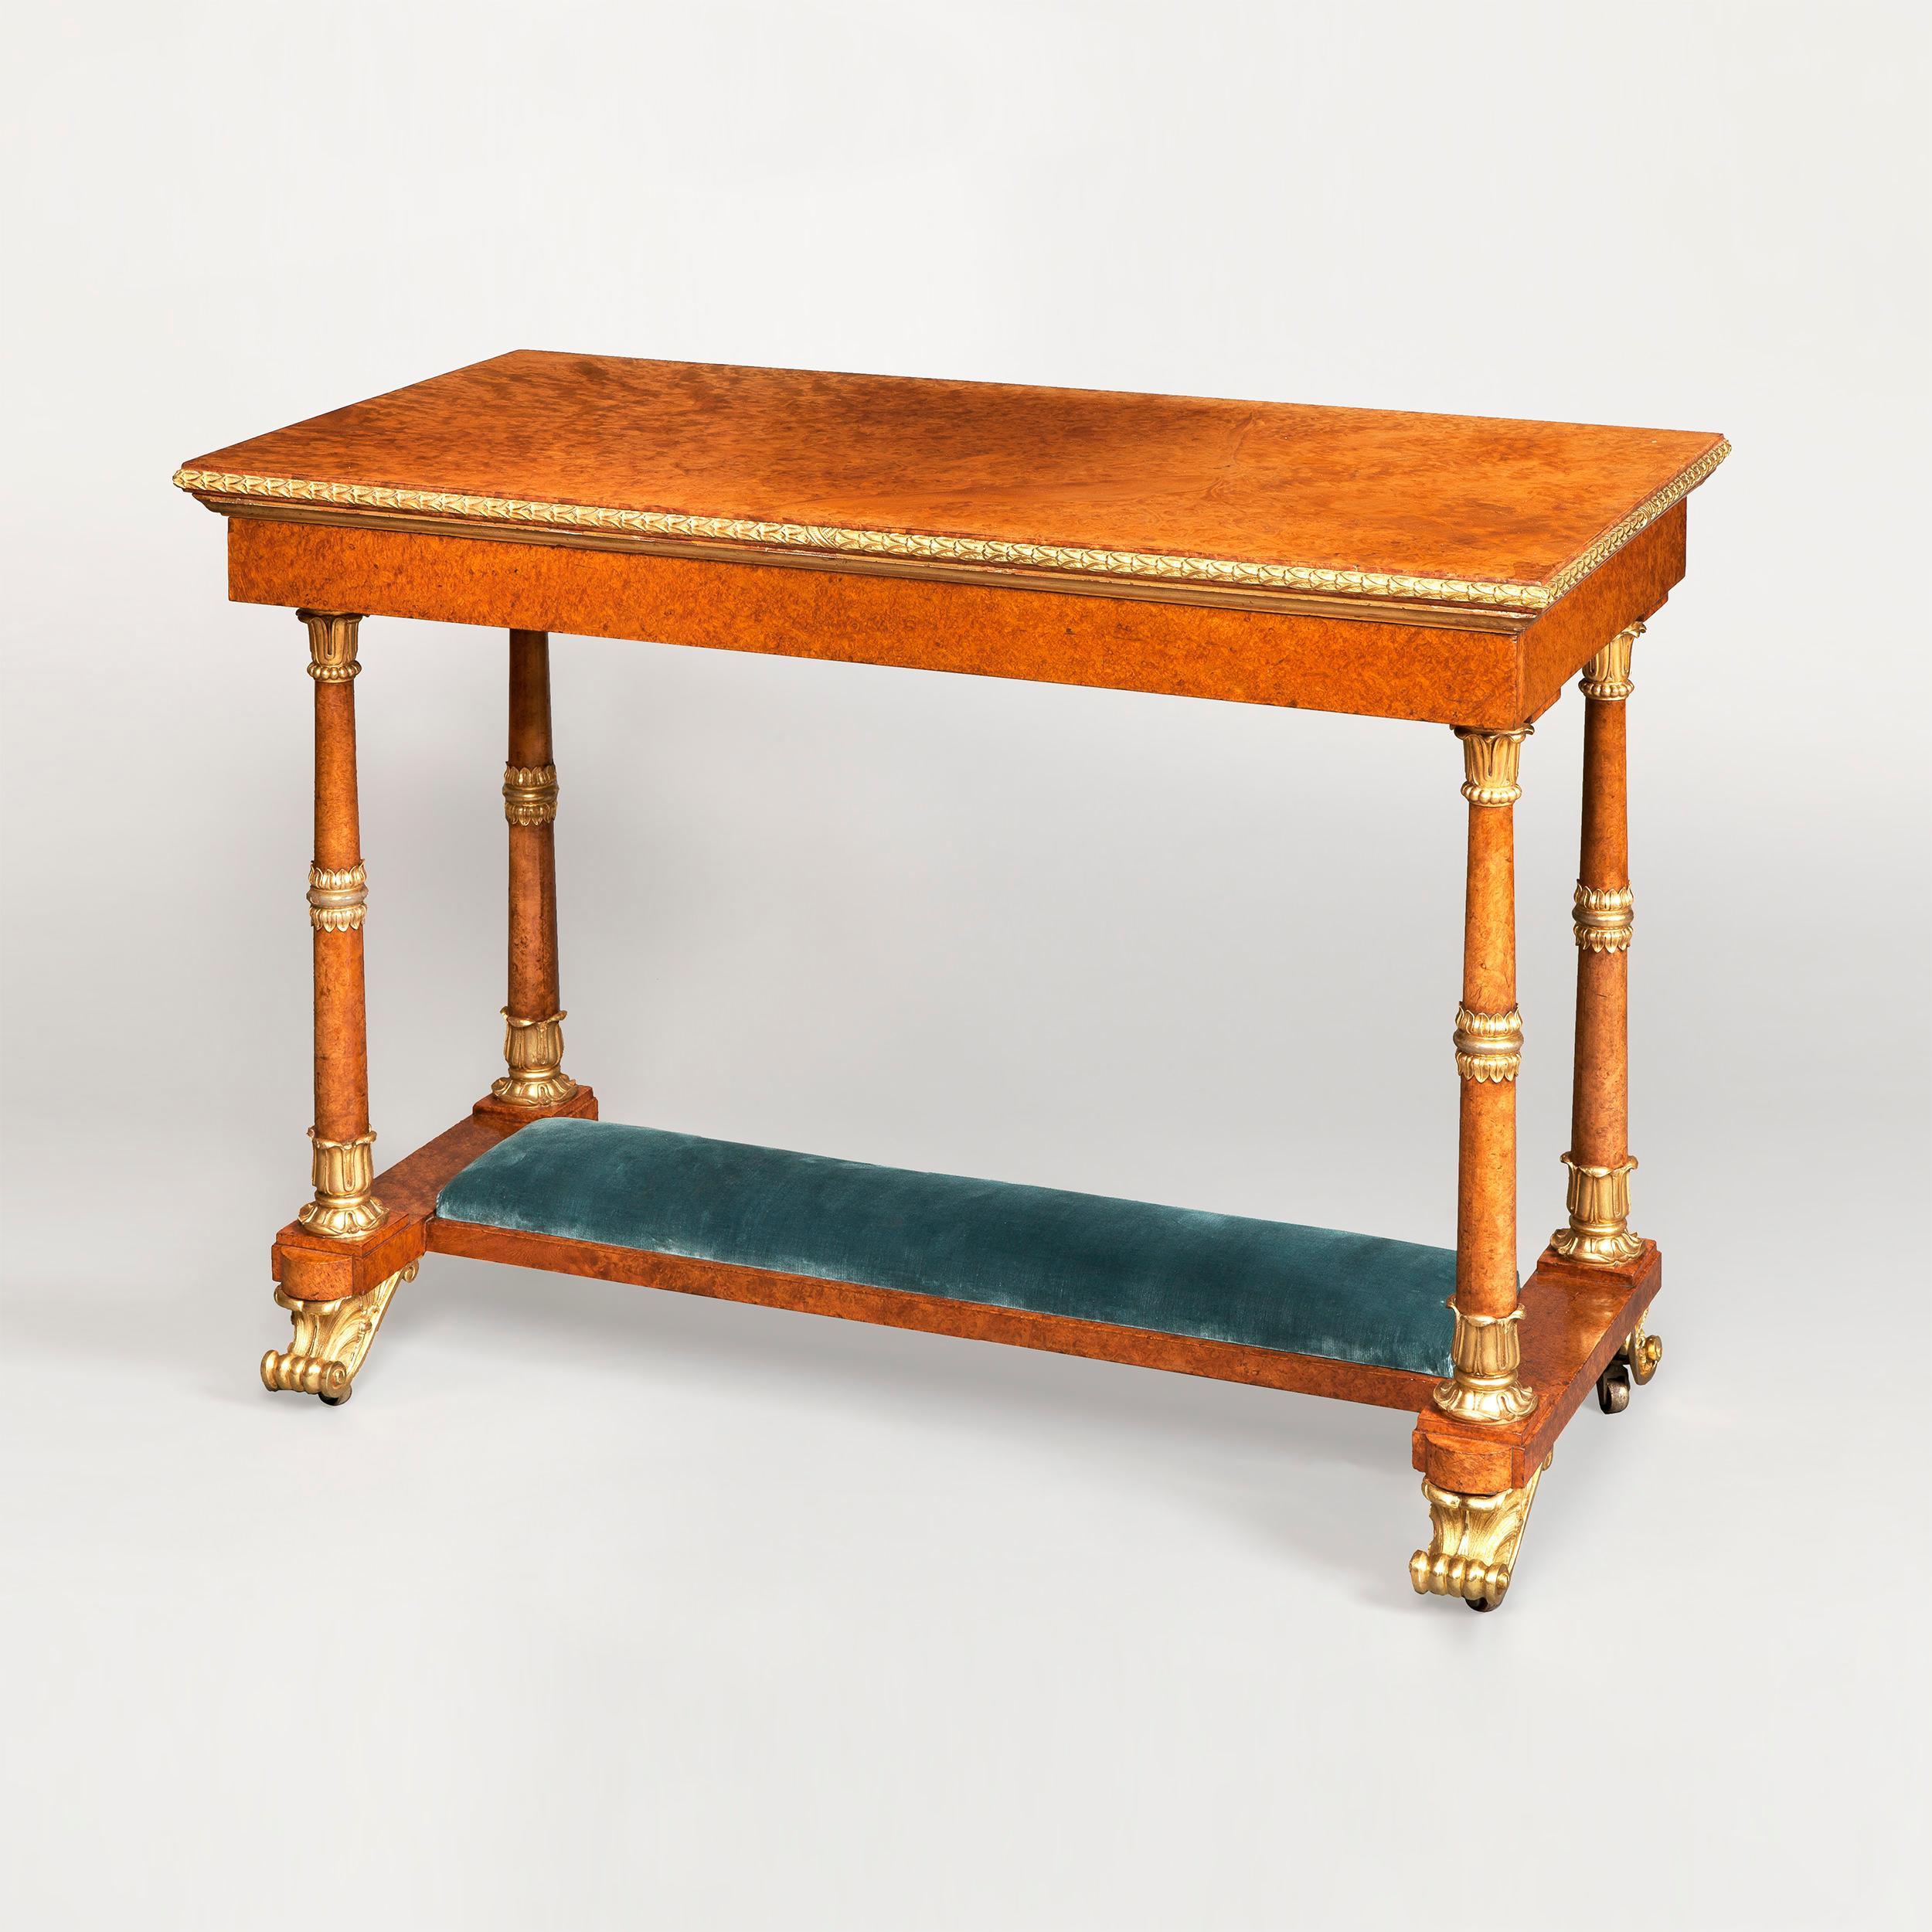 Ein sehr wichtiger und seltener königlicher Tisch, der von Morel & Seddon für die Windsor Castle Commission unter dem Kommando von Georg IV. hergestellt wurde. 

Konstruiert in Amboyna, mit Ormolu vergoldeten Bronzebeschlägen, mit Highlights in